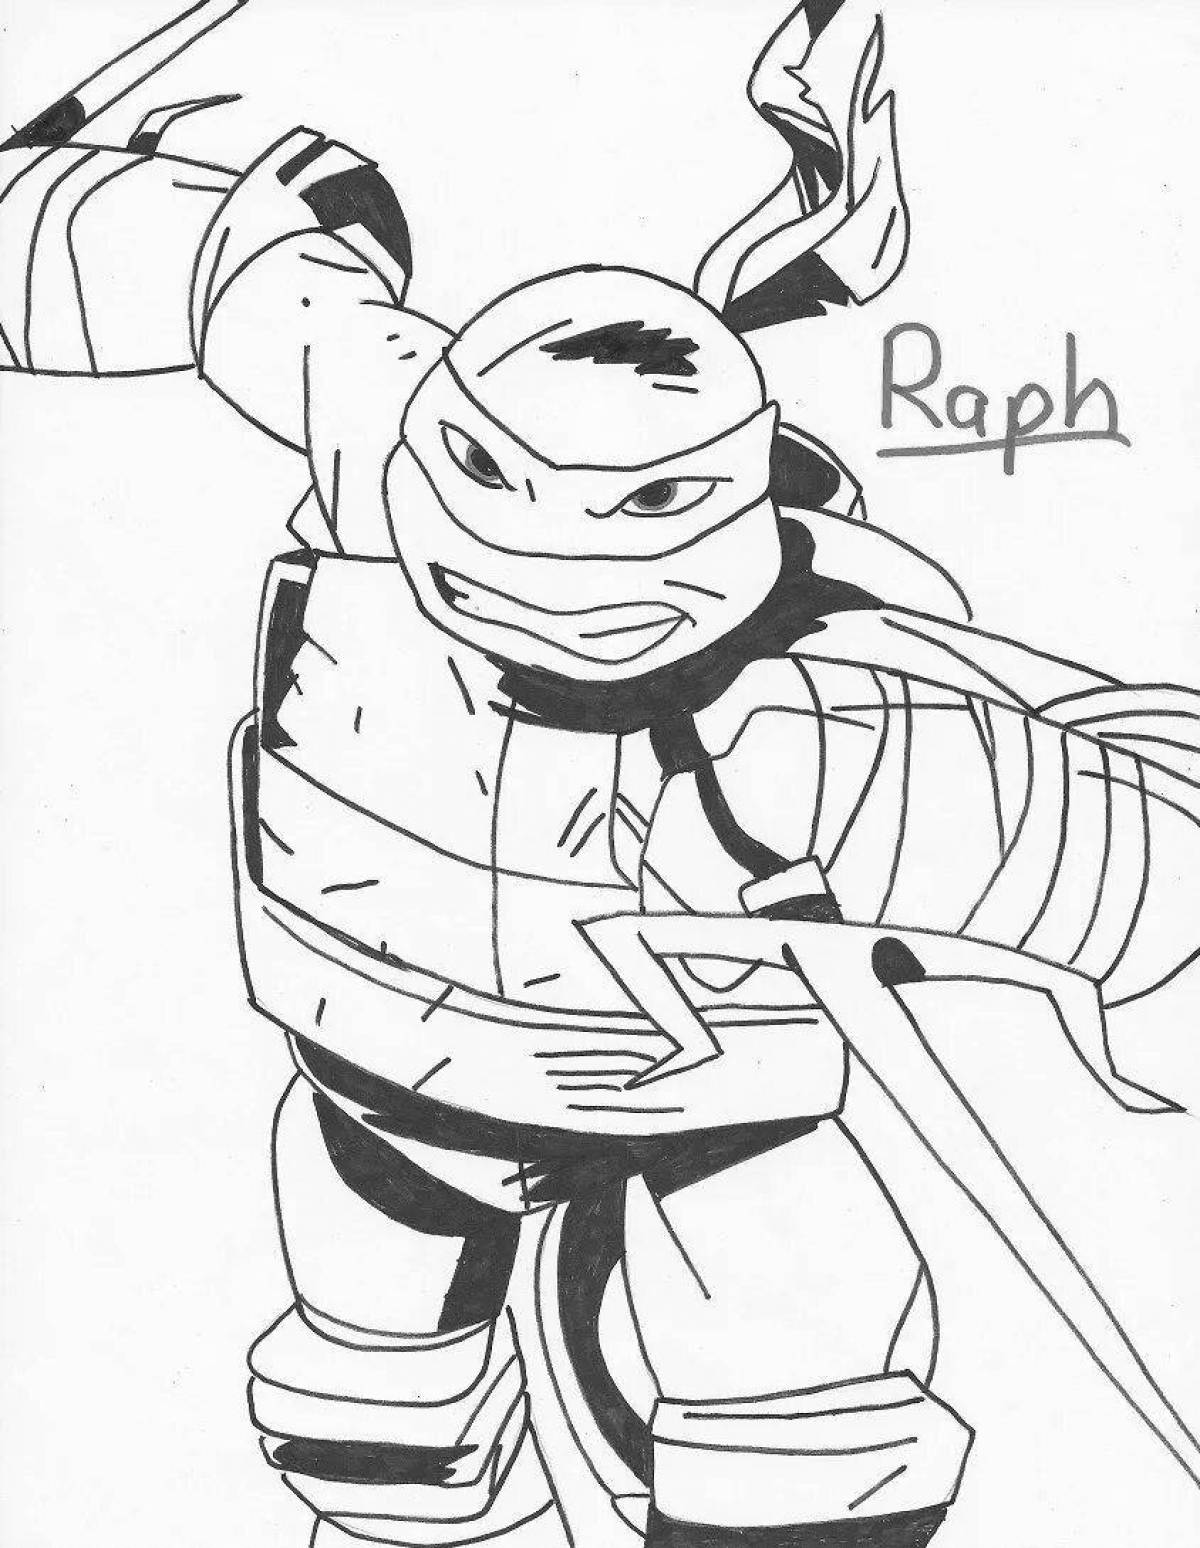 Raphael's wonderful Teenage Mutant Ninja Turtles